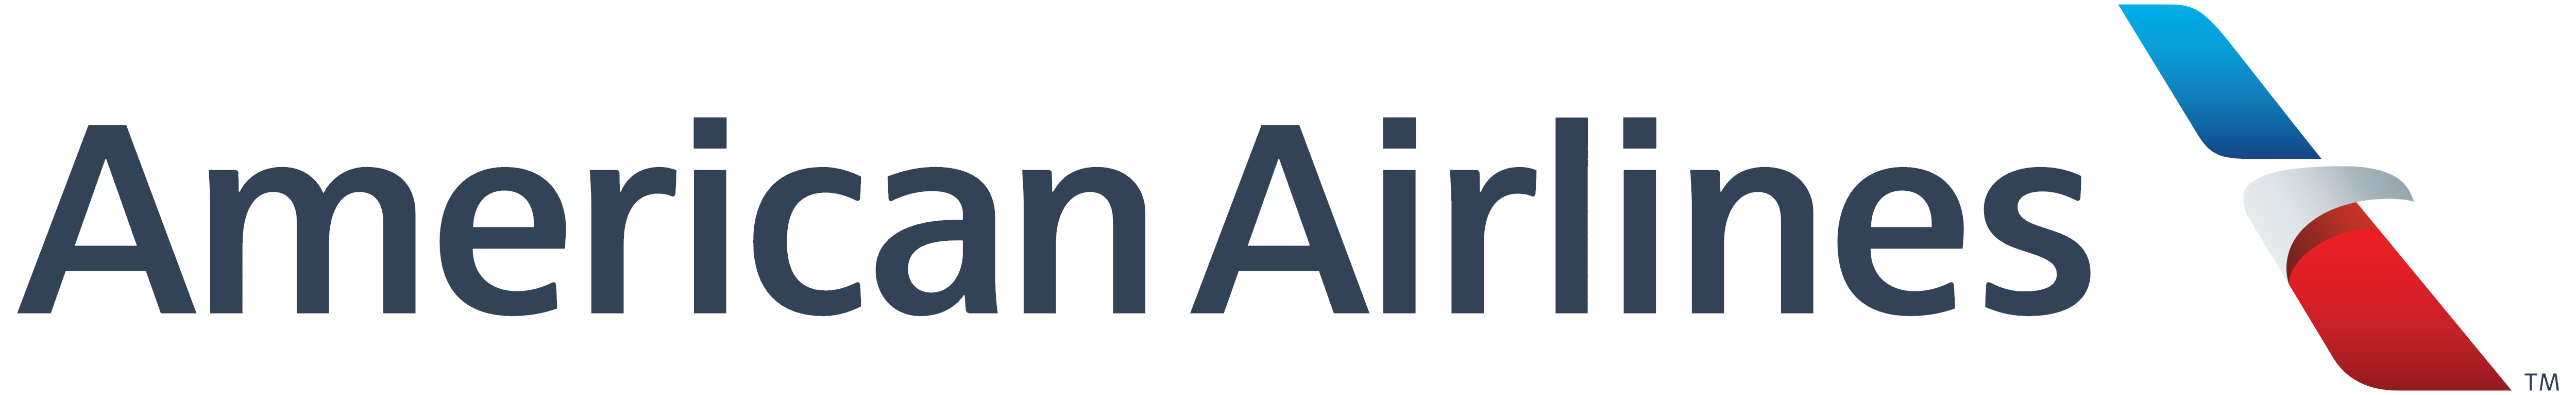 Tipe logo maskapai penerbangan Amerika berwarna putih